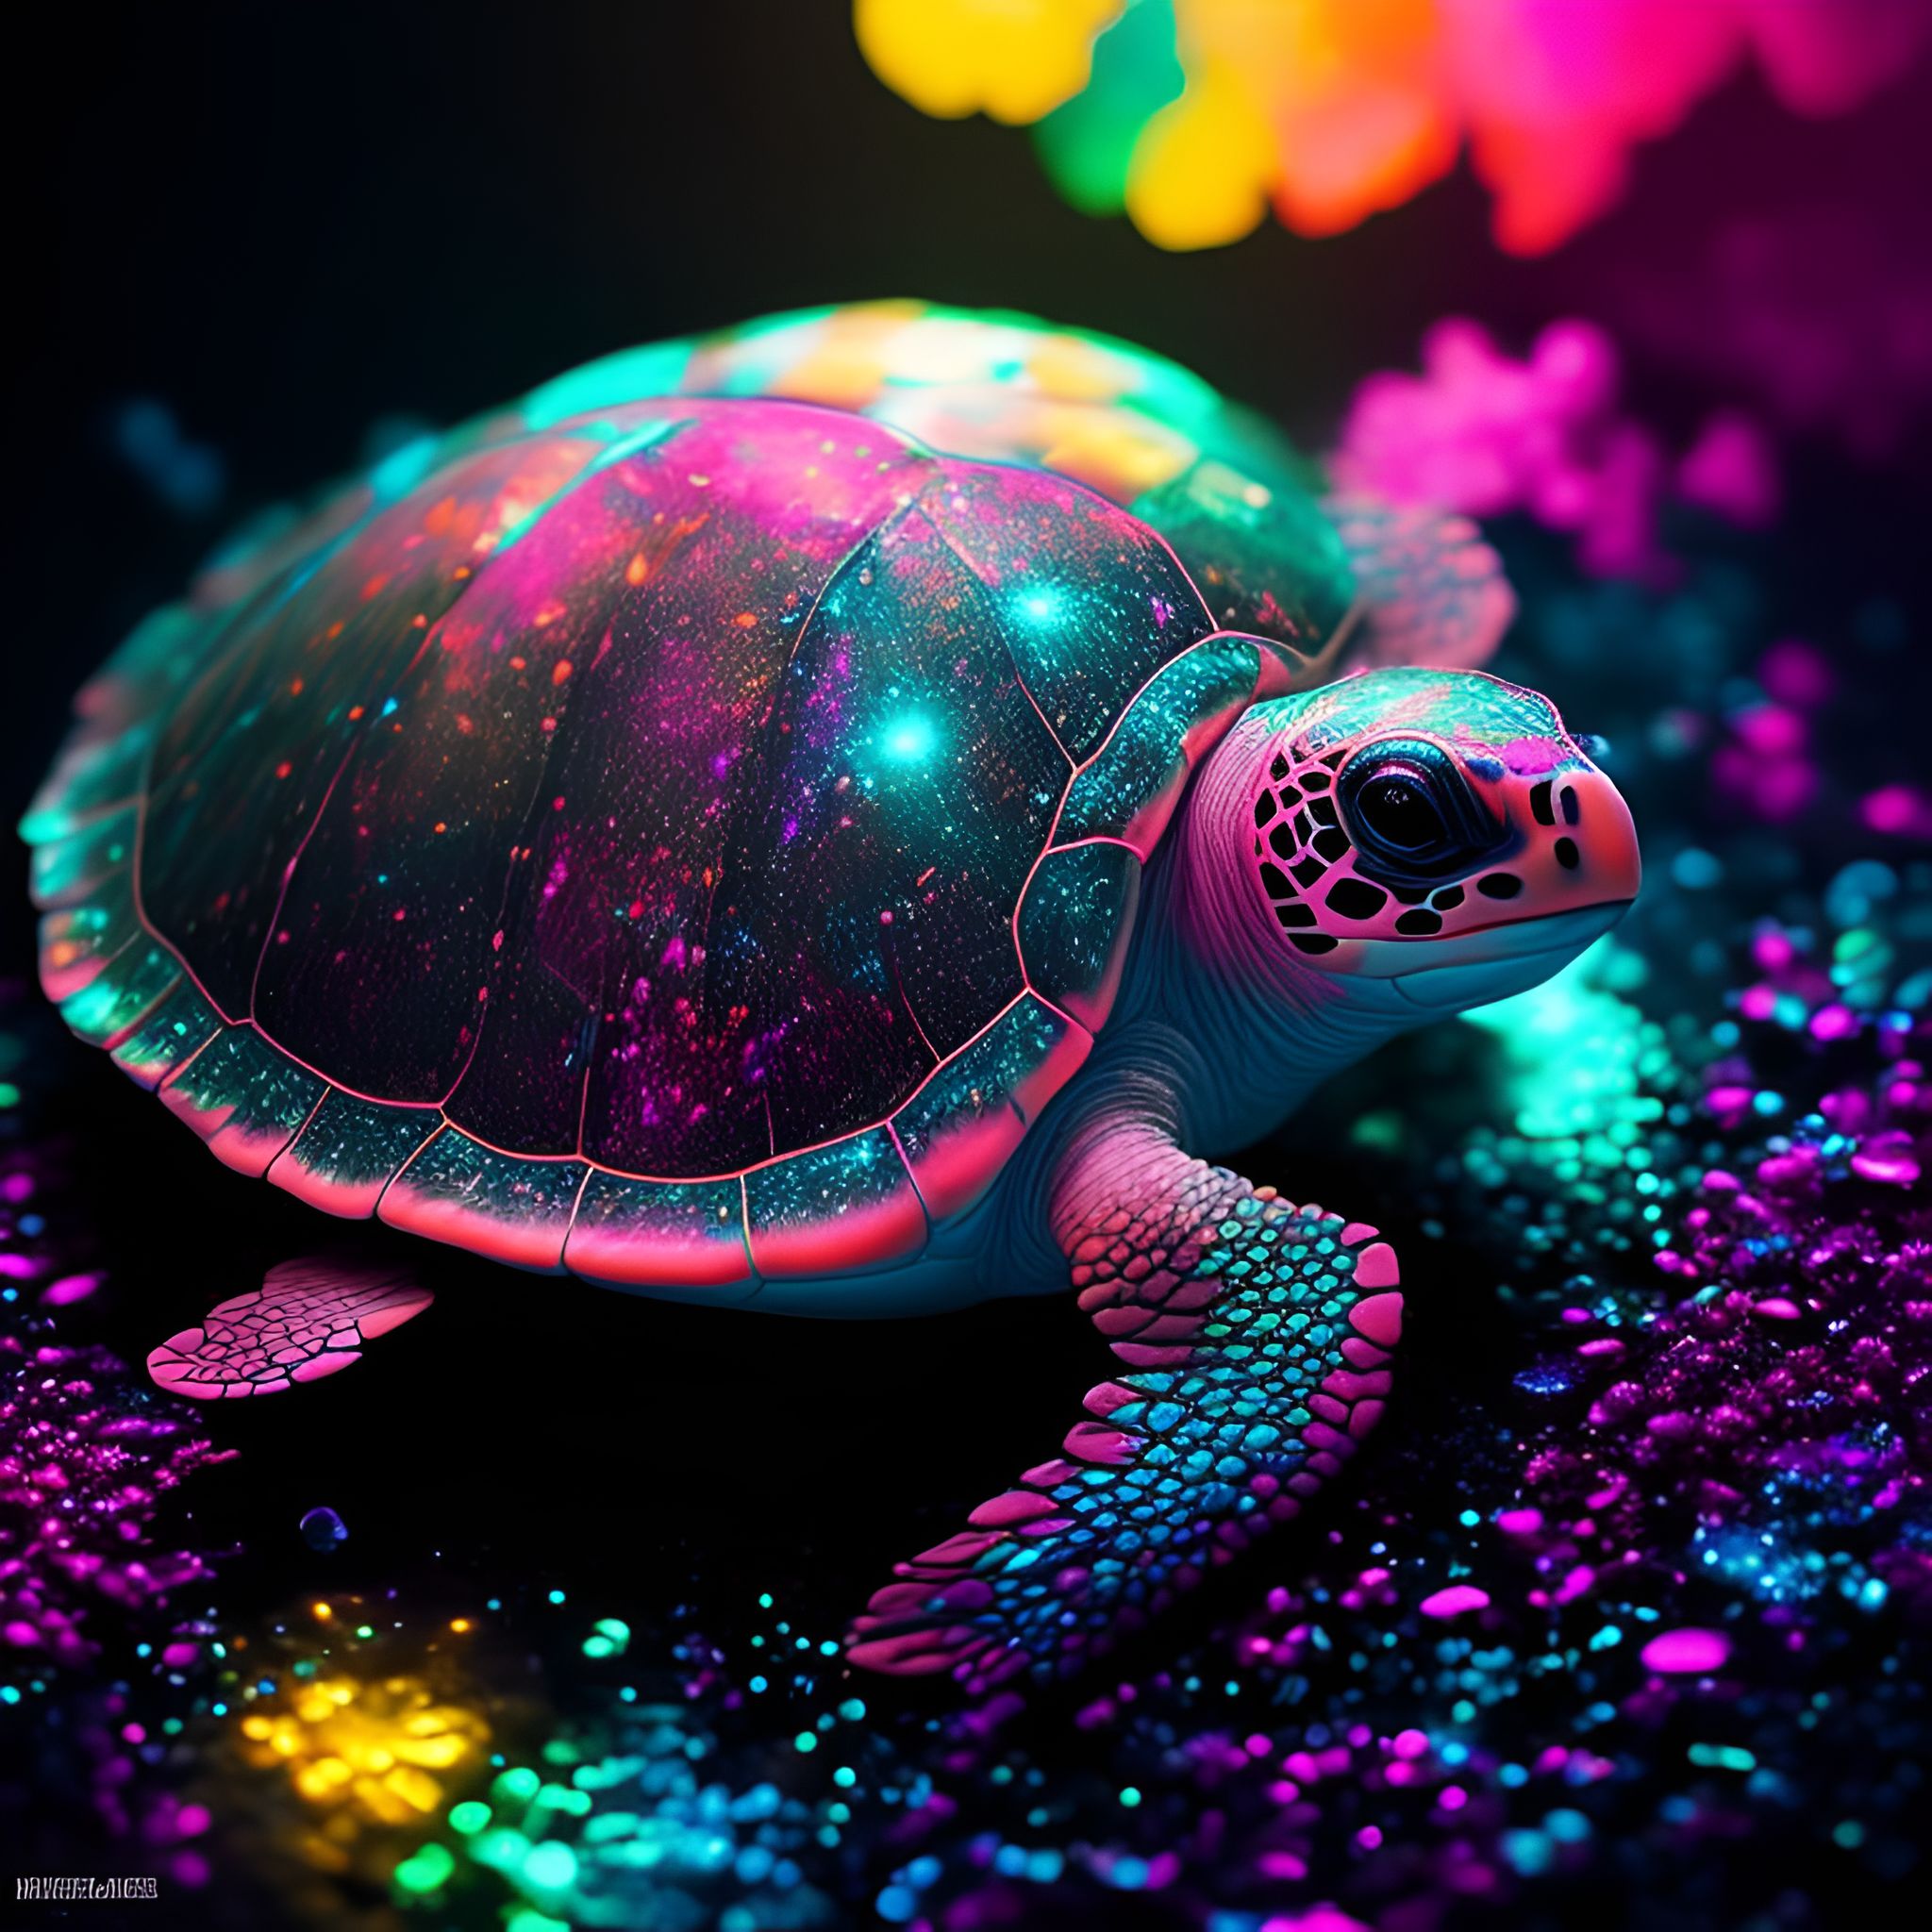 Abstract neon paint splash art turtle animal